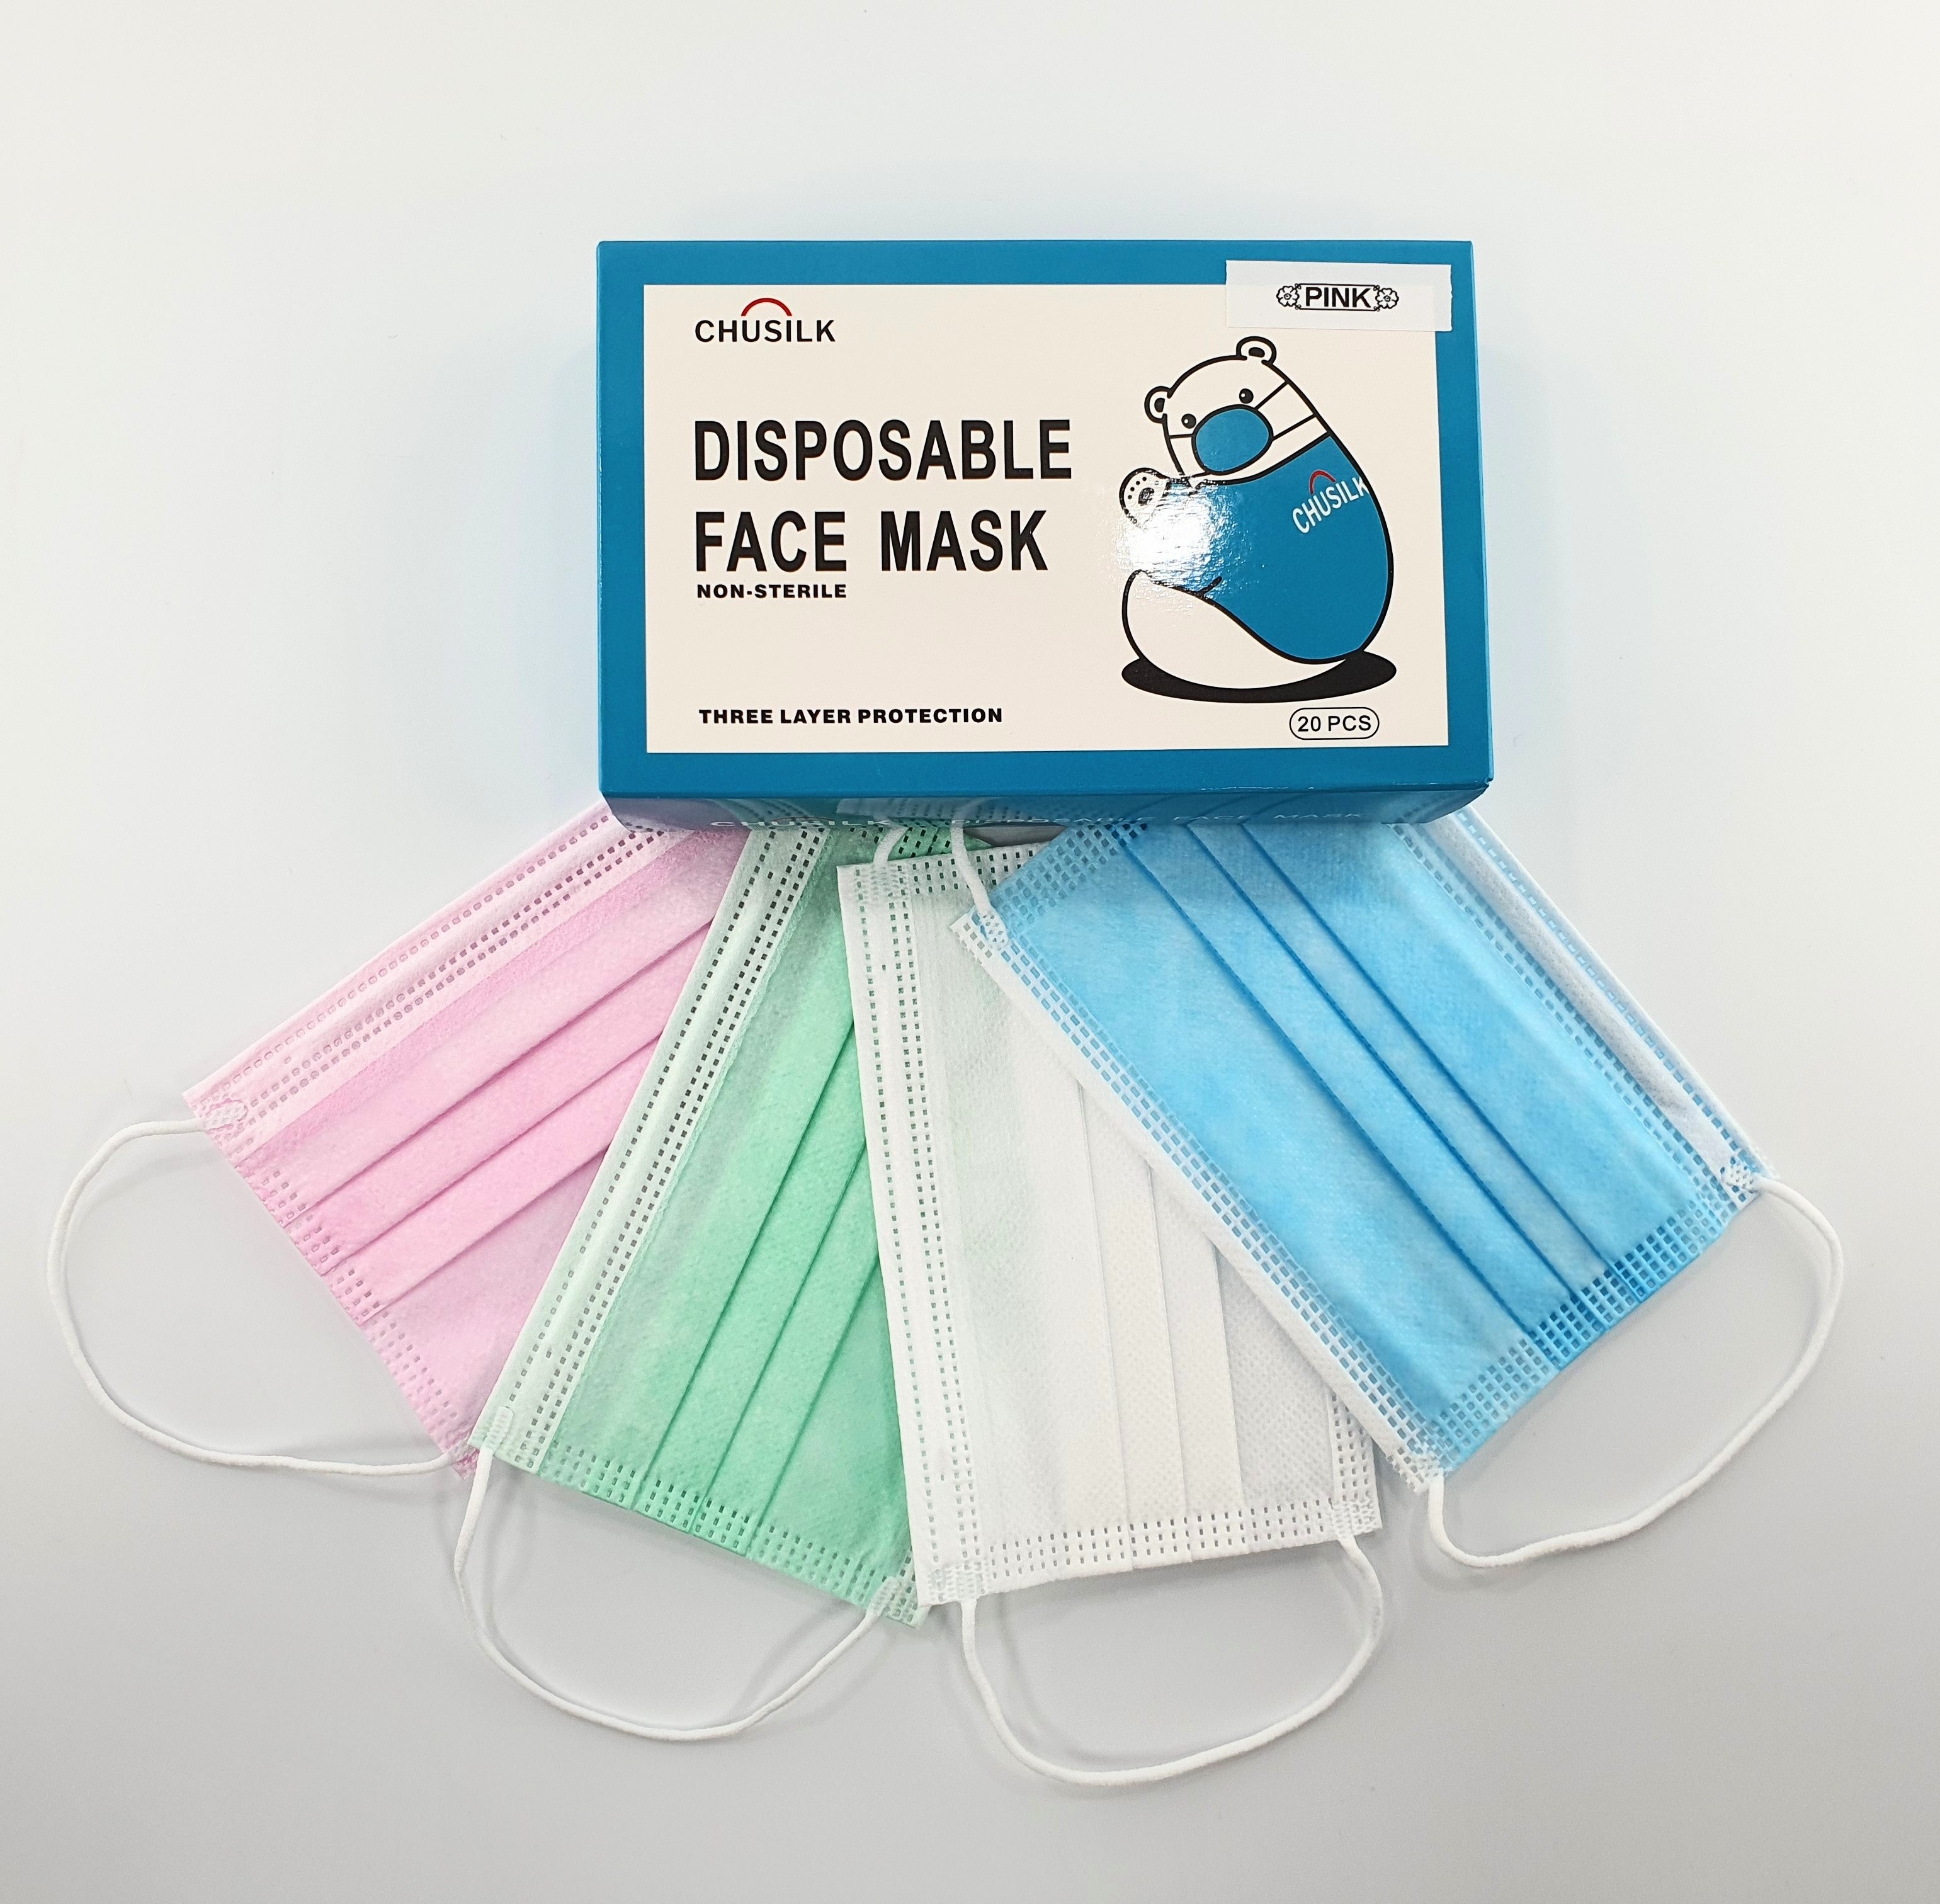 Vive Neck Gaiter (3 Pack) - Face Mask for Men, Women, Kids